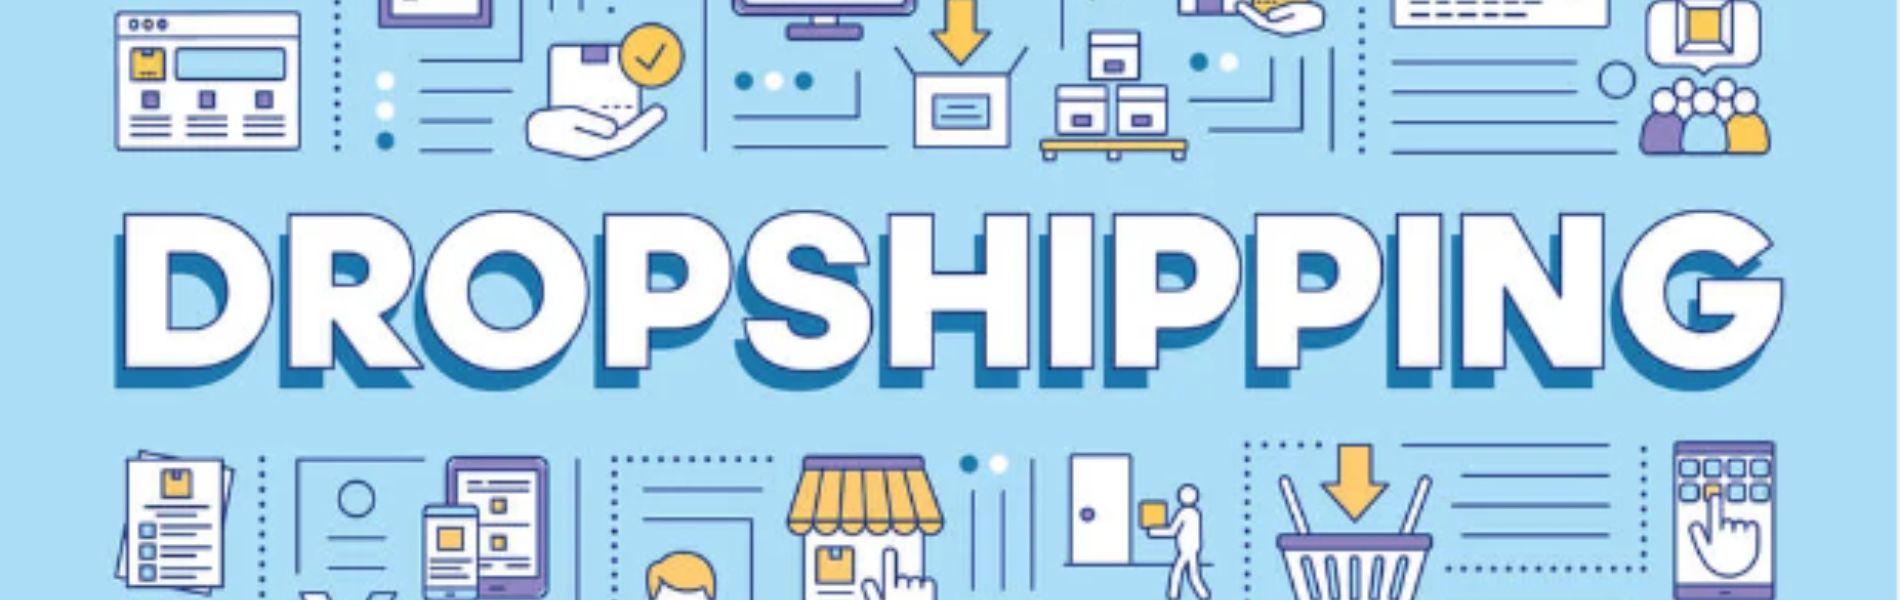 dropshipping: conheça essa modalidade de venda